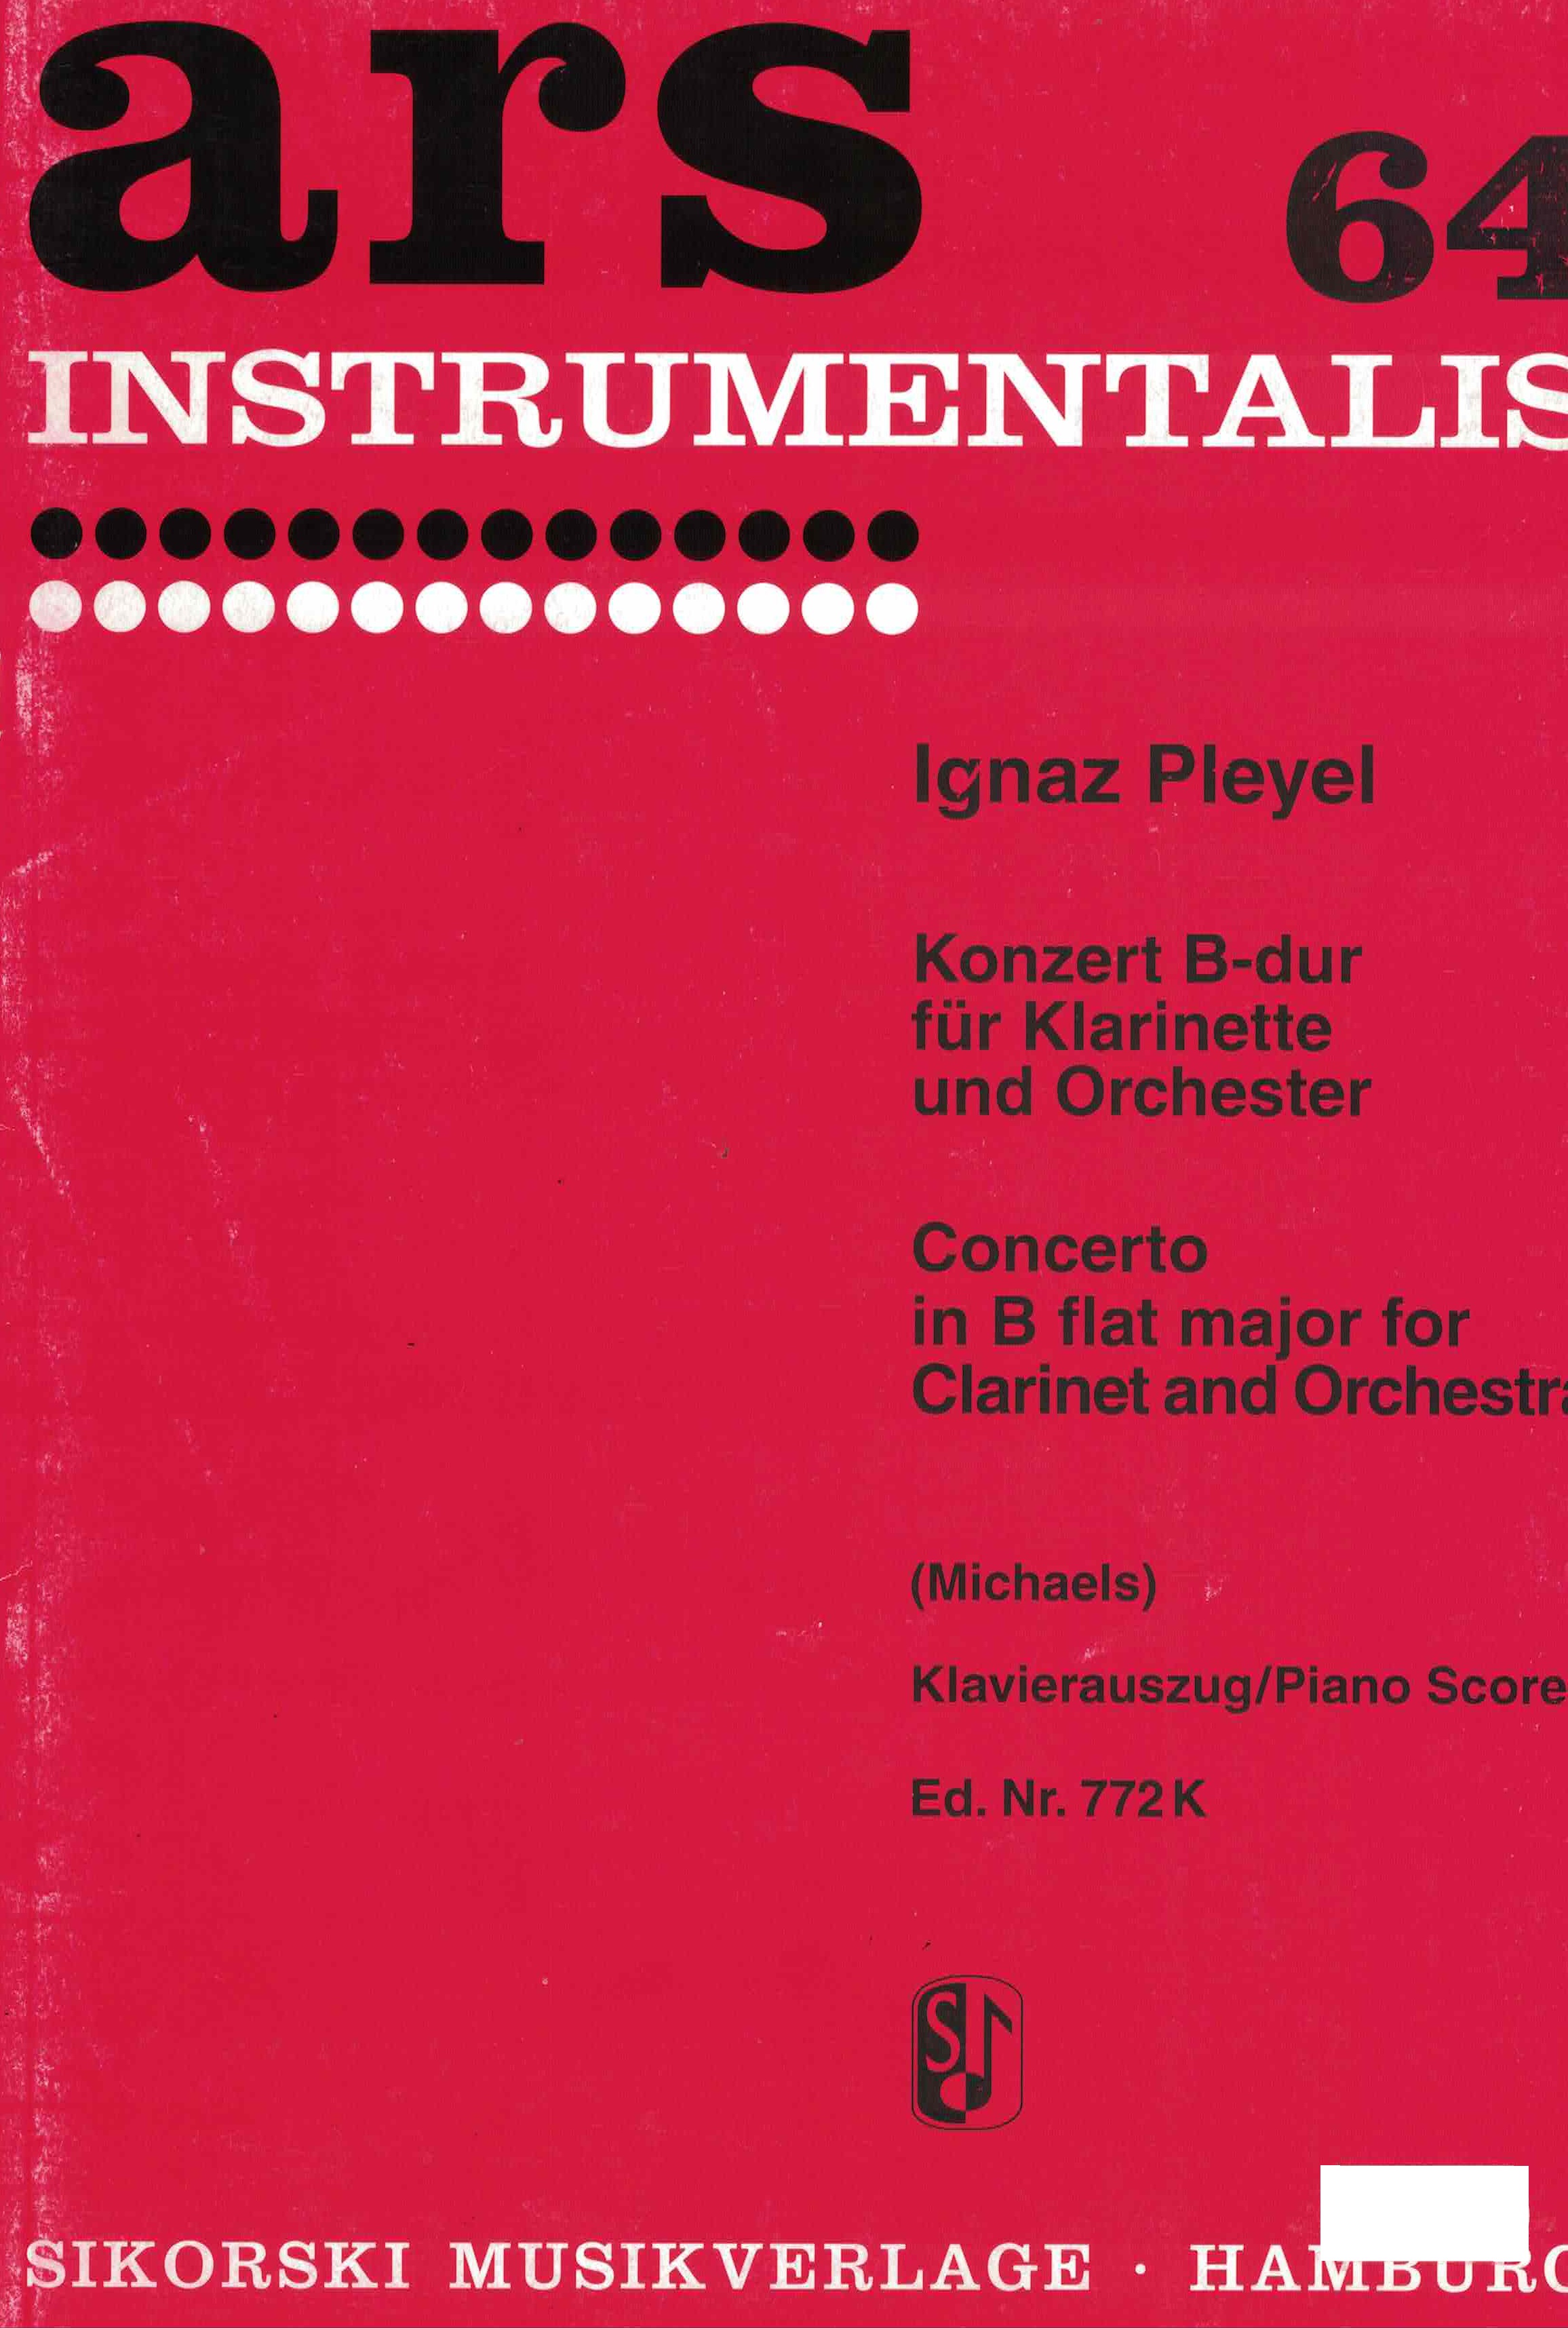 Konzert B-Dur - Pleyel, Klarinette/Klavier